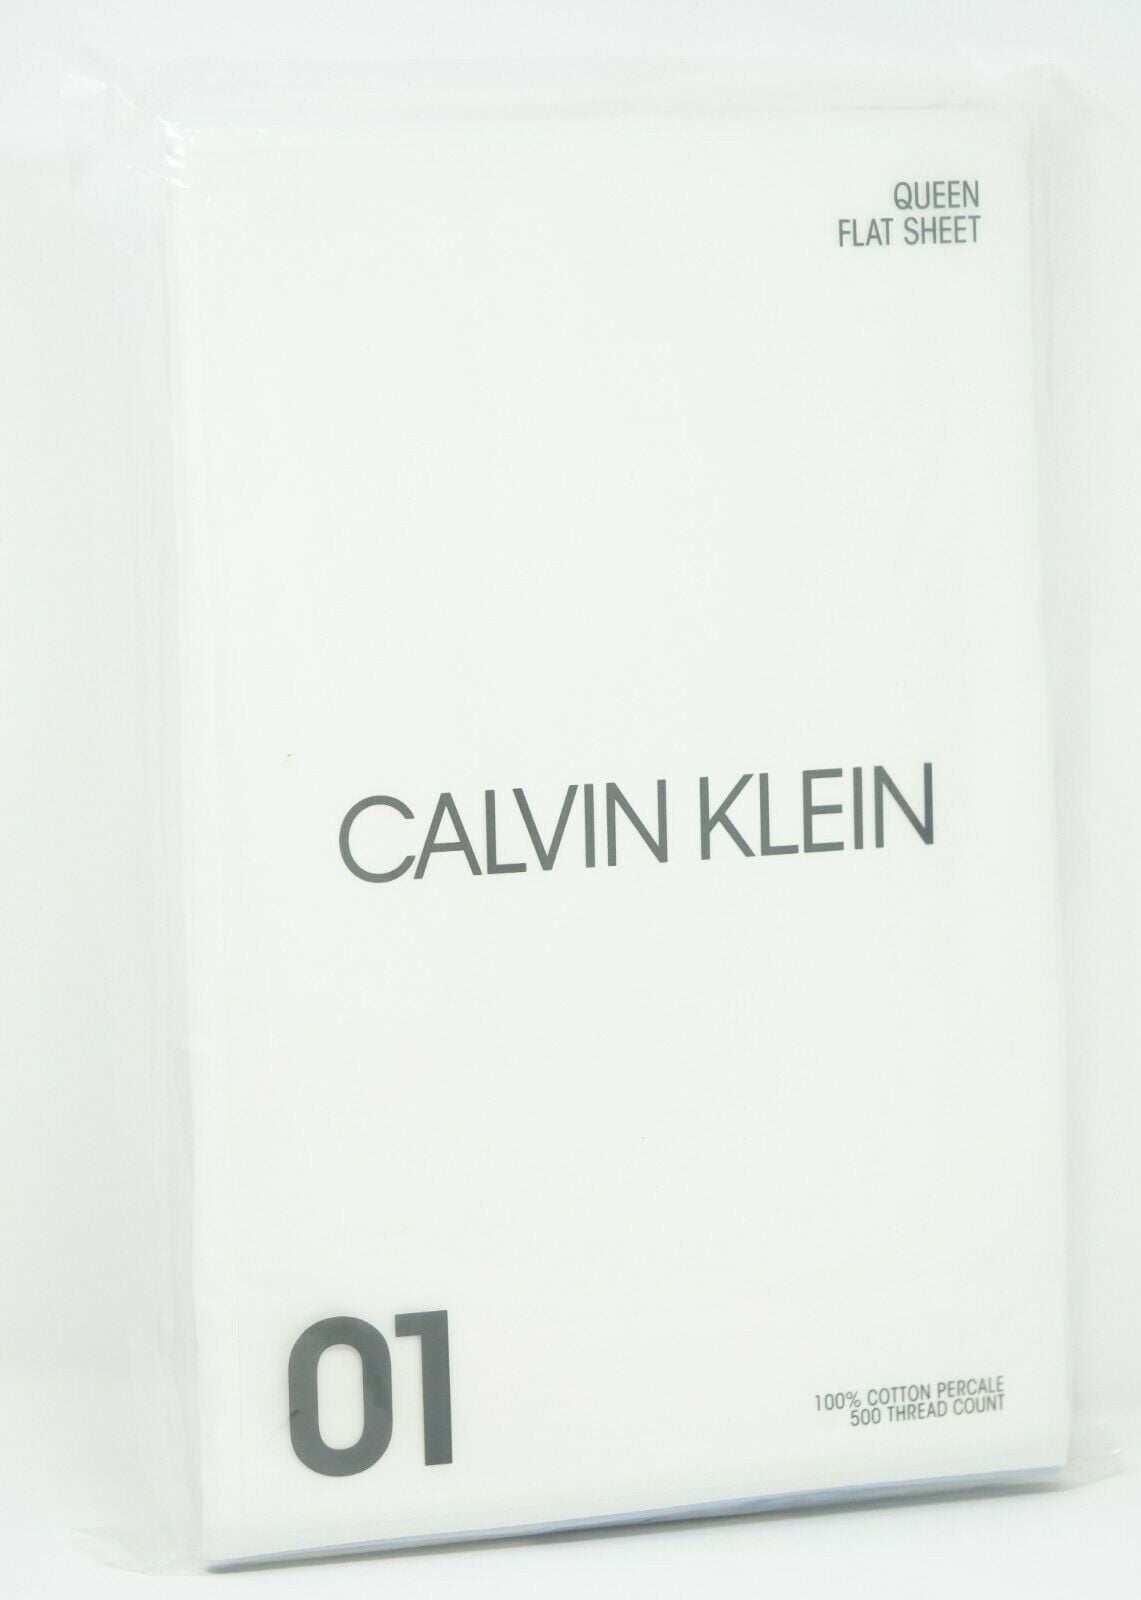 Calvin Klein Series 1 500 TC 100% Combed Cotton Flat Sheet - QUEEN - Light  Blue 